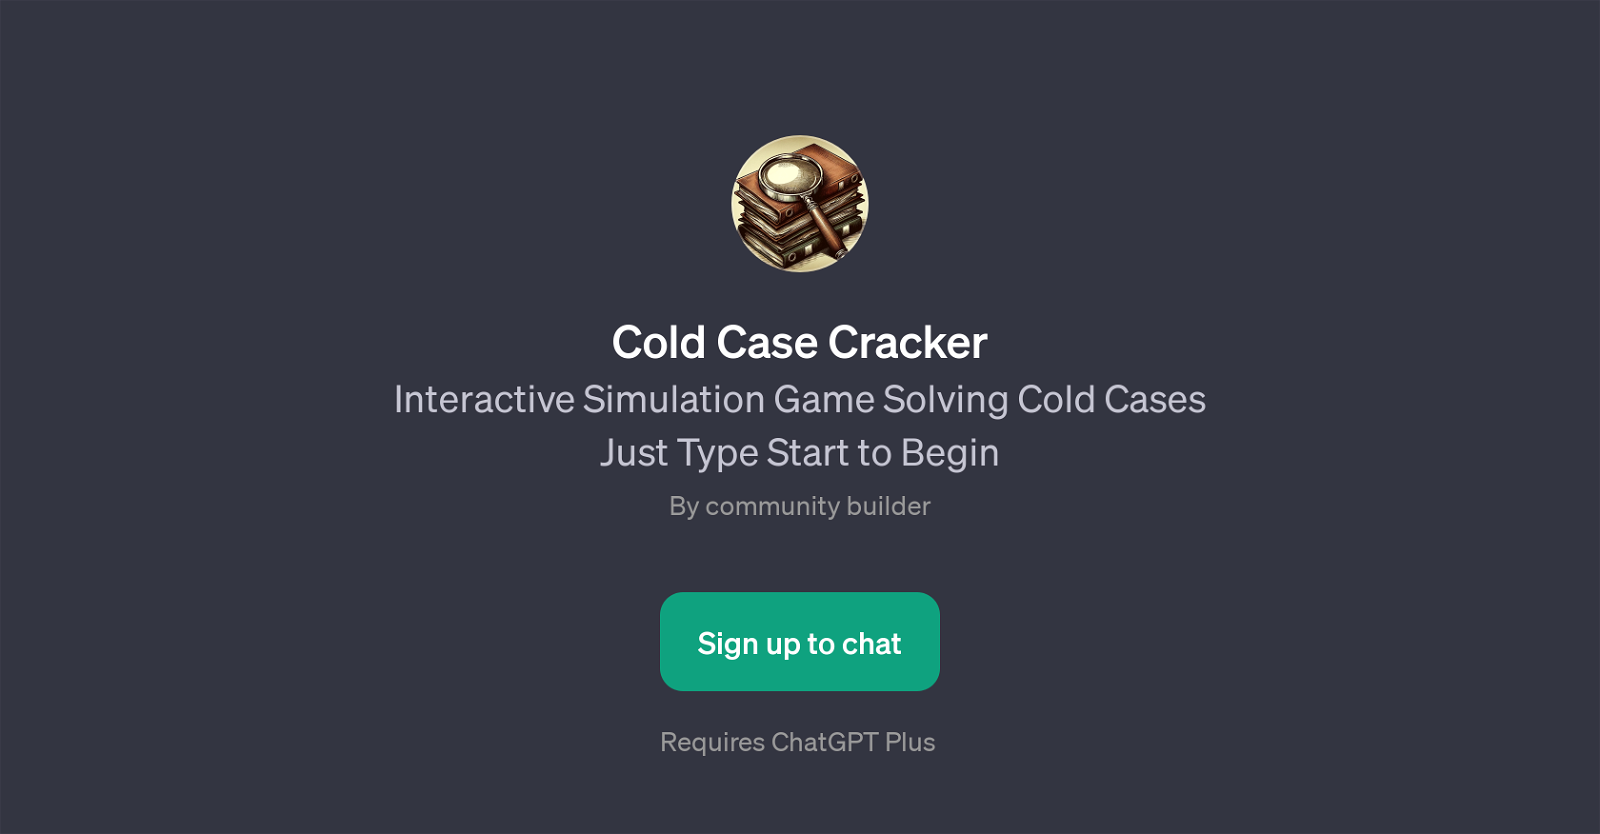 Cold Case Cracker website